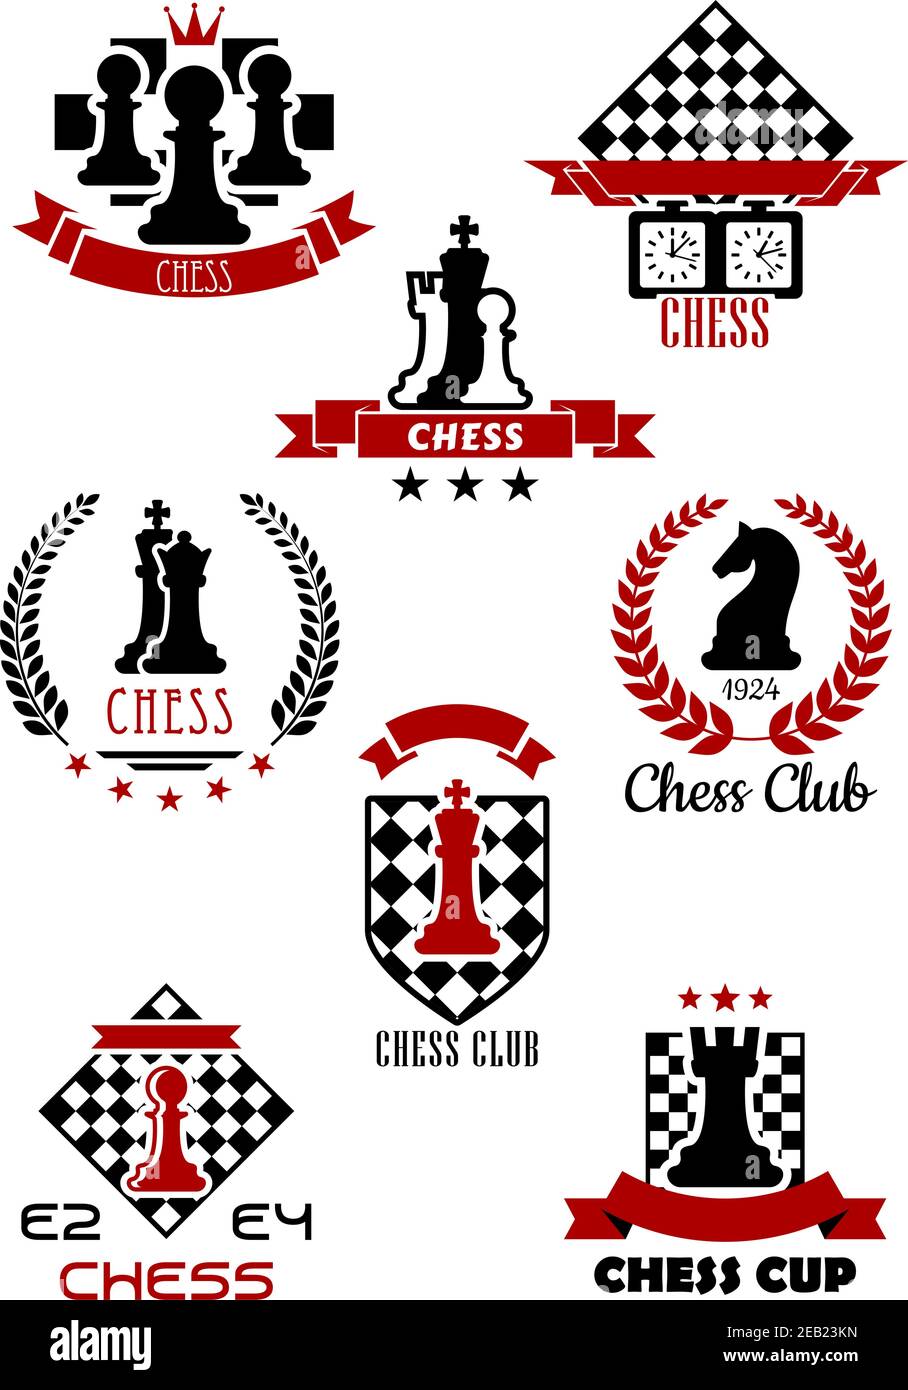 Schwarz und rot Schach Sport Spiel Logos, Etiketten und Symbole für Club, Cup und Turnier Symbol Design Stock Vektor